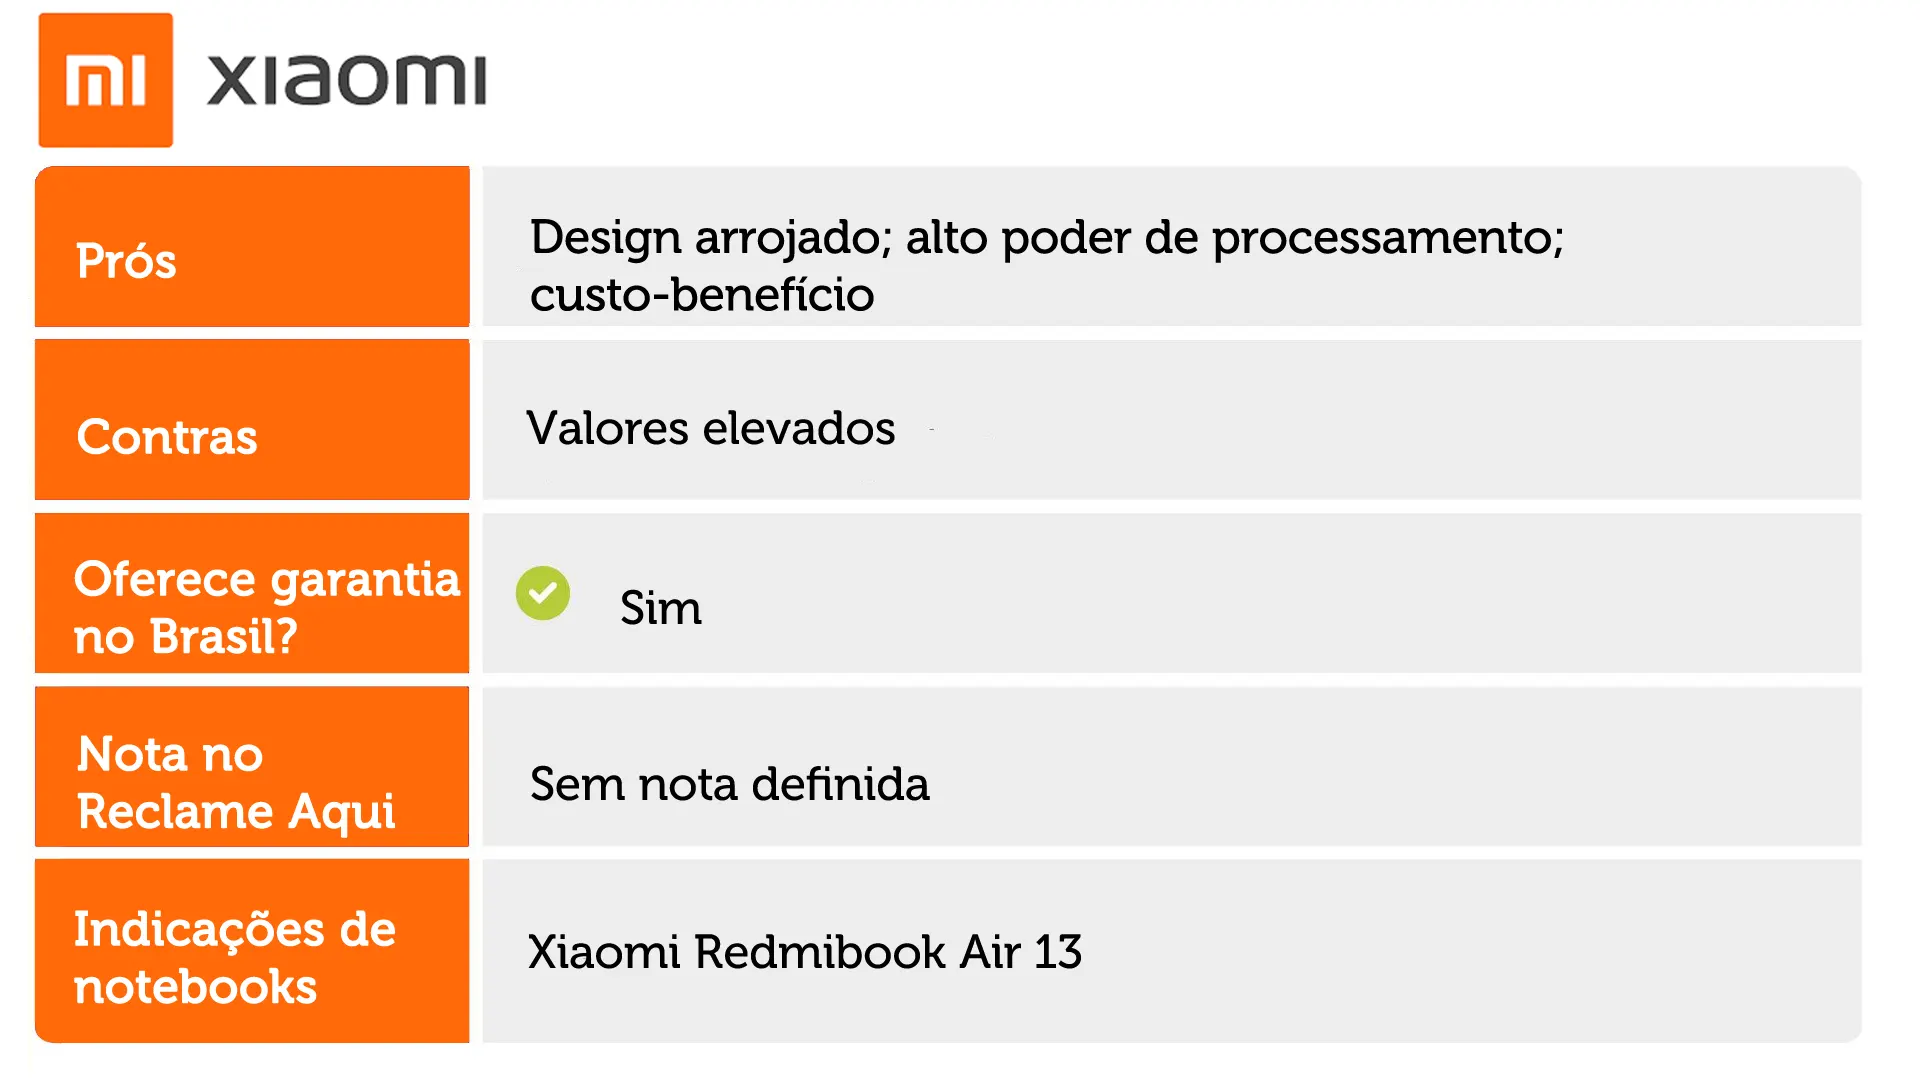 Tabela informativa da Xiaomi, entre as marcas de notebook